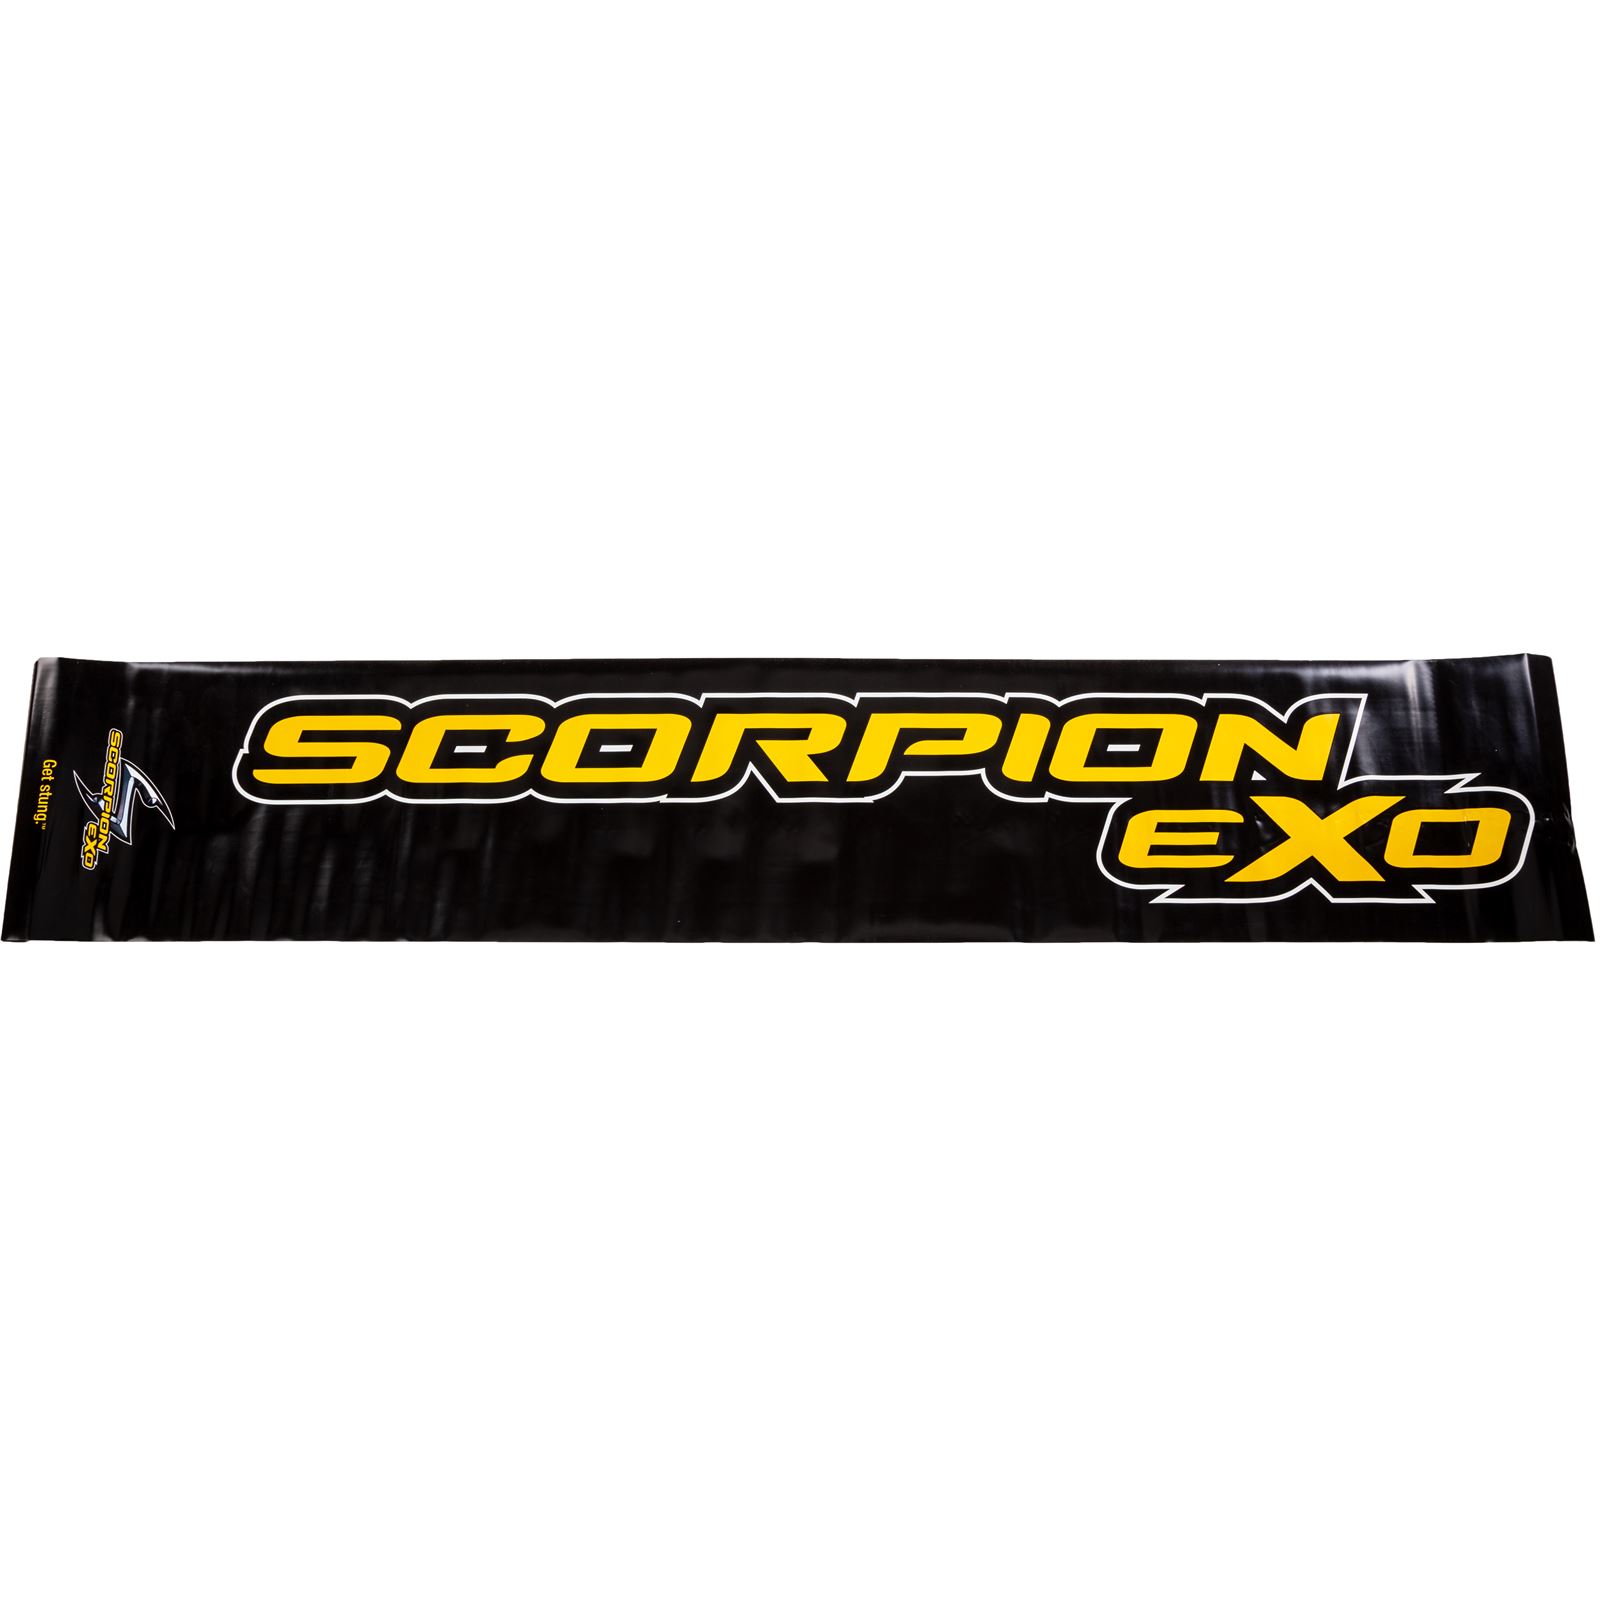 Scorpion Brand Sign